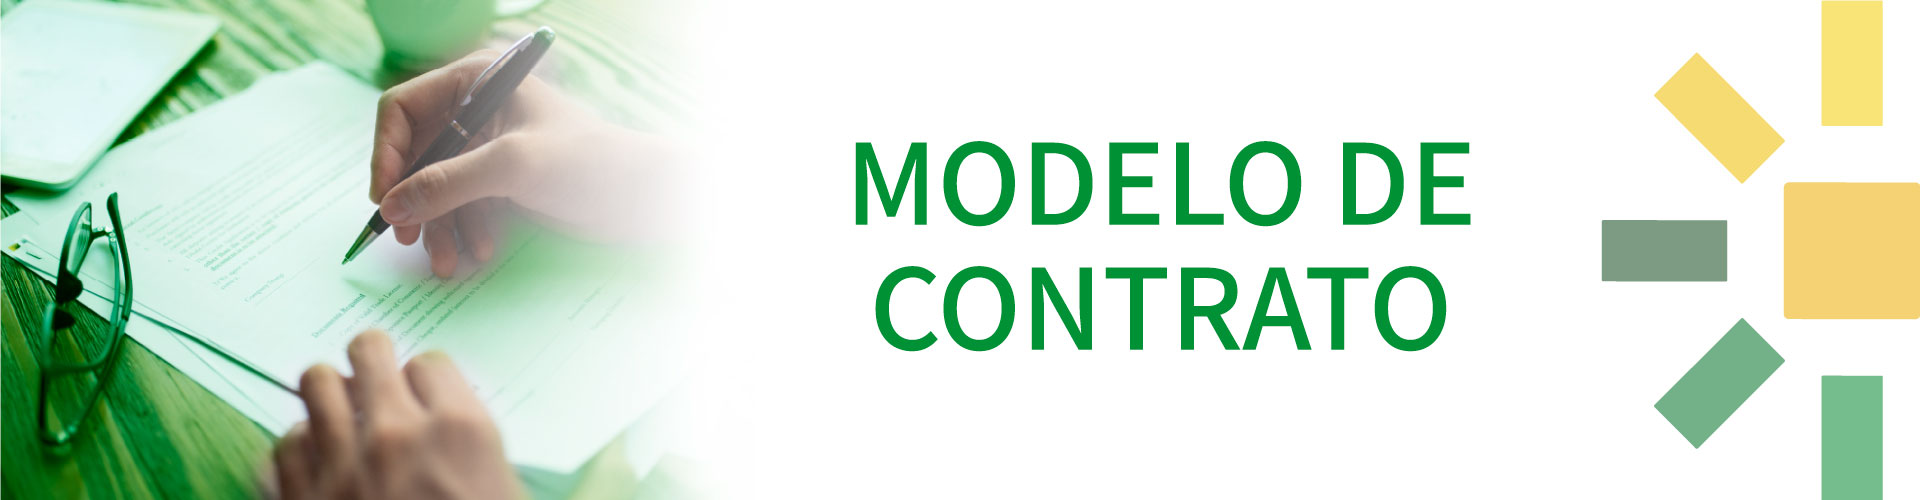 Modelo de Contratos